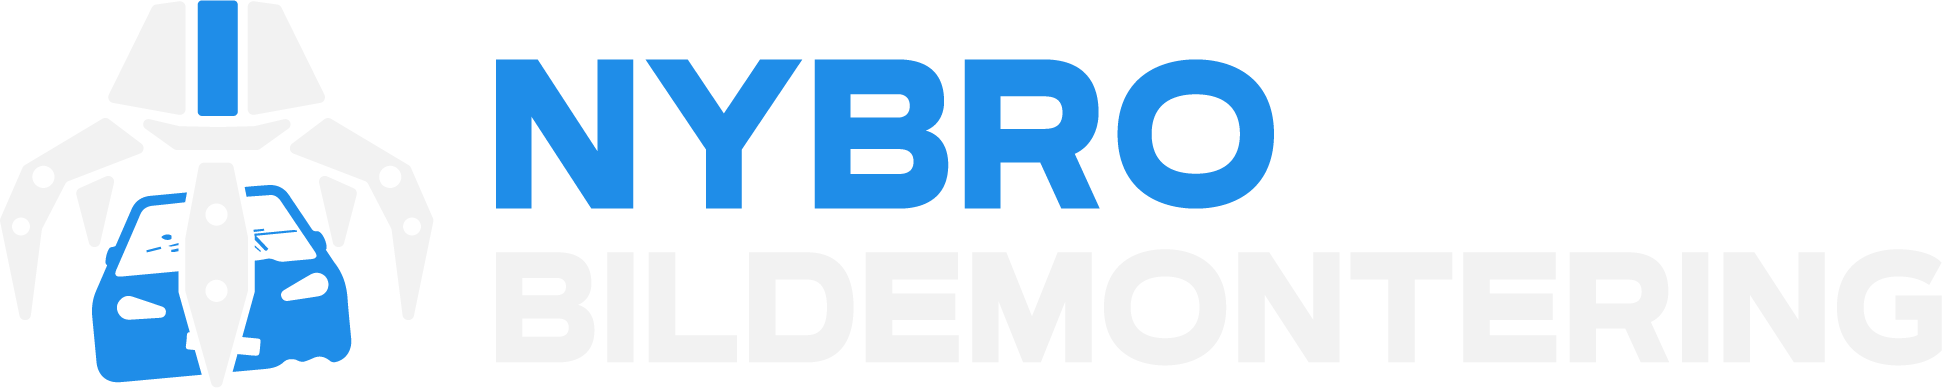 Nybro Bildemontering Logo